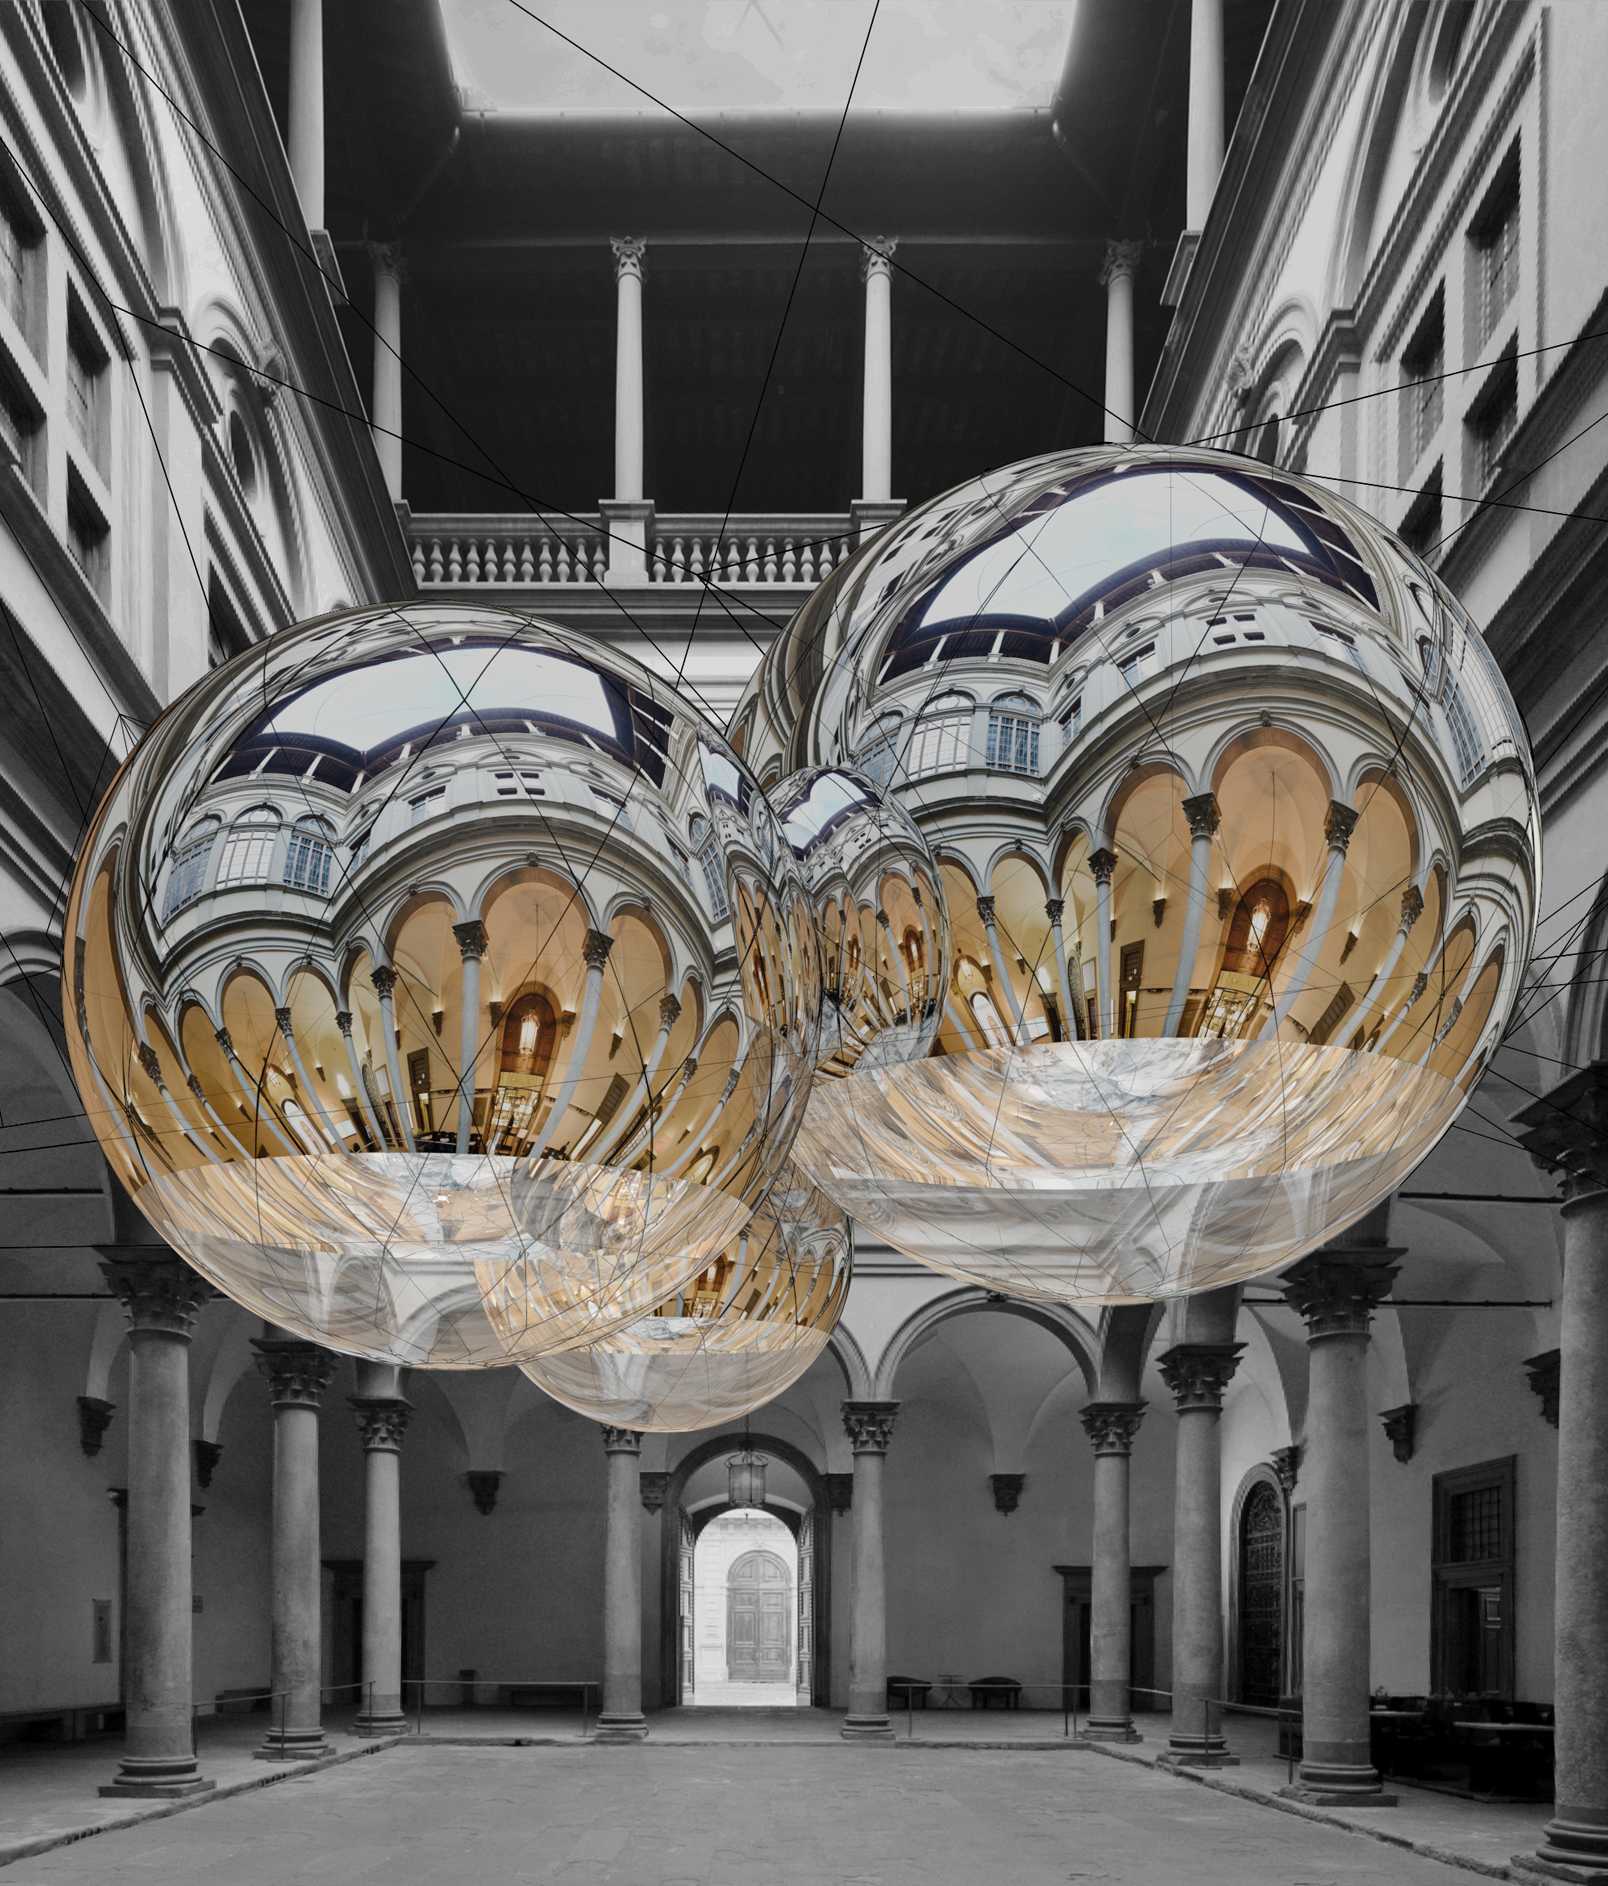 Progetto per Thermodynamic Constellation (Costellazione Termodinamica), 2020 Installazione di Tomàs Saraceno per il cortile di Palazzo Strozzi